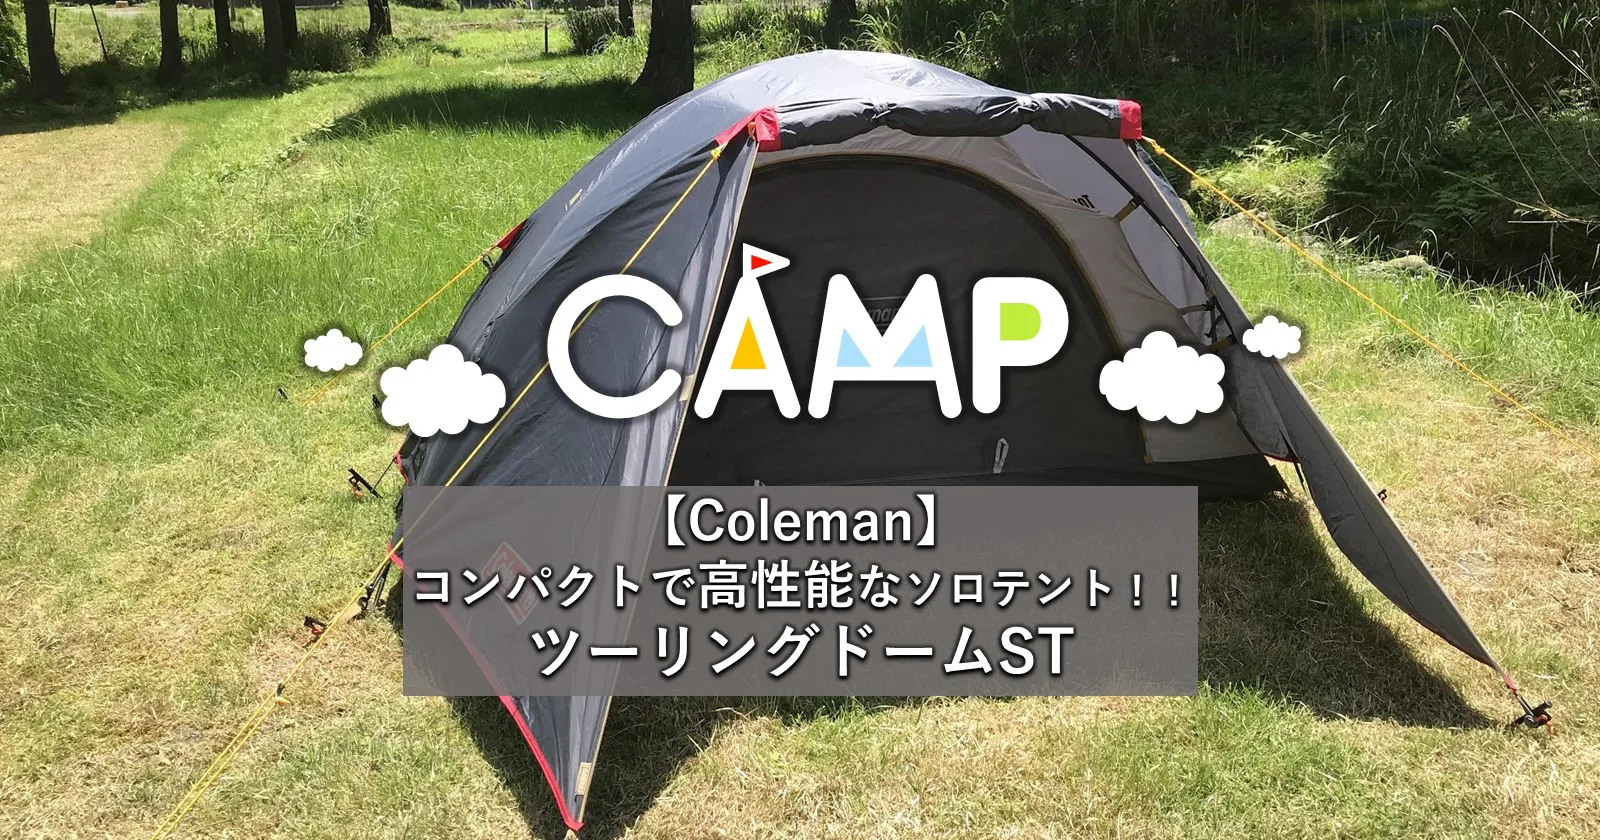 コールマン(Coleman) テント ツーリングドーム ST 1?2人用 テント